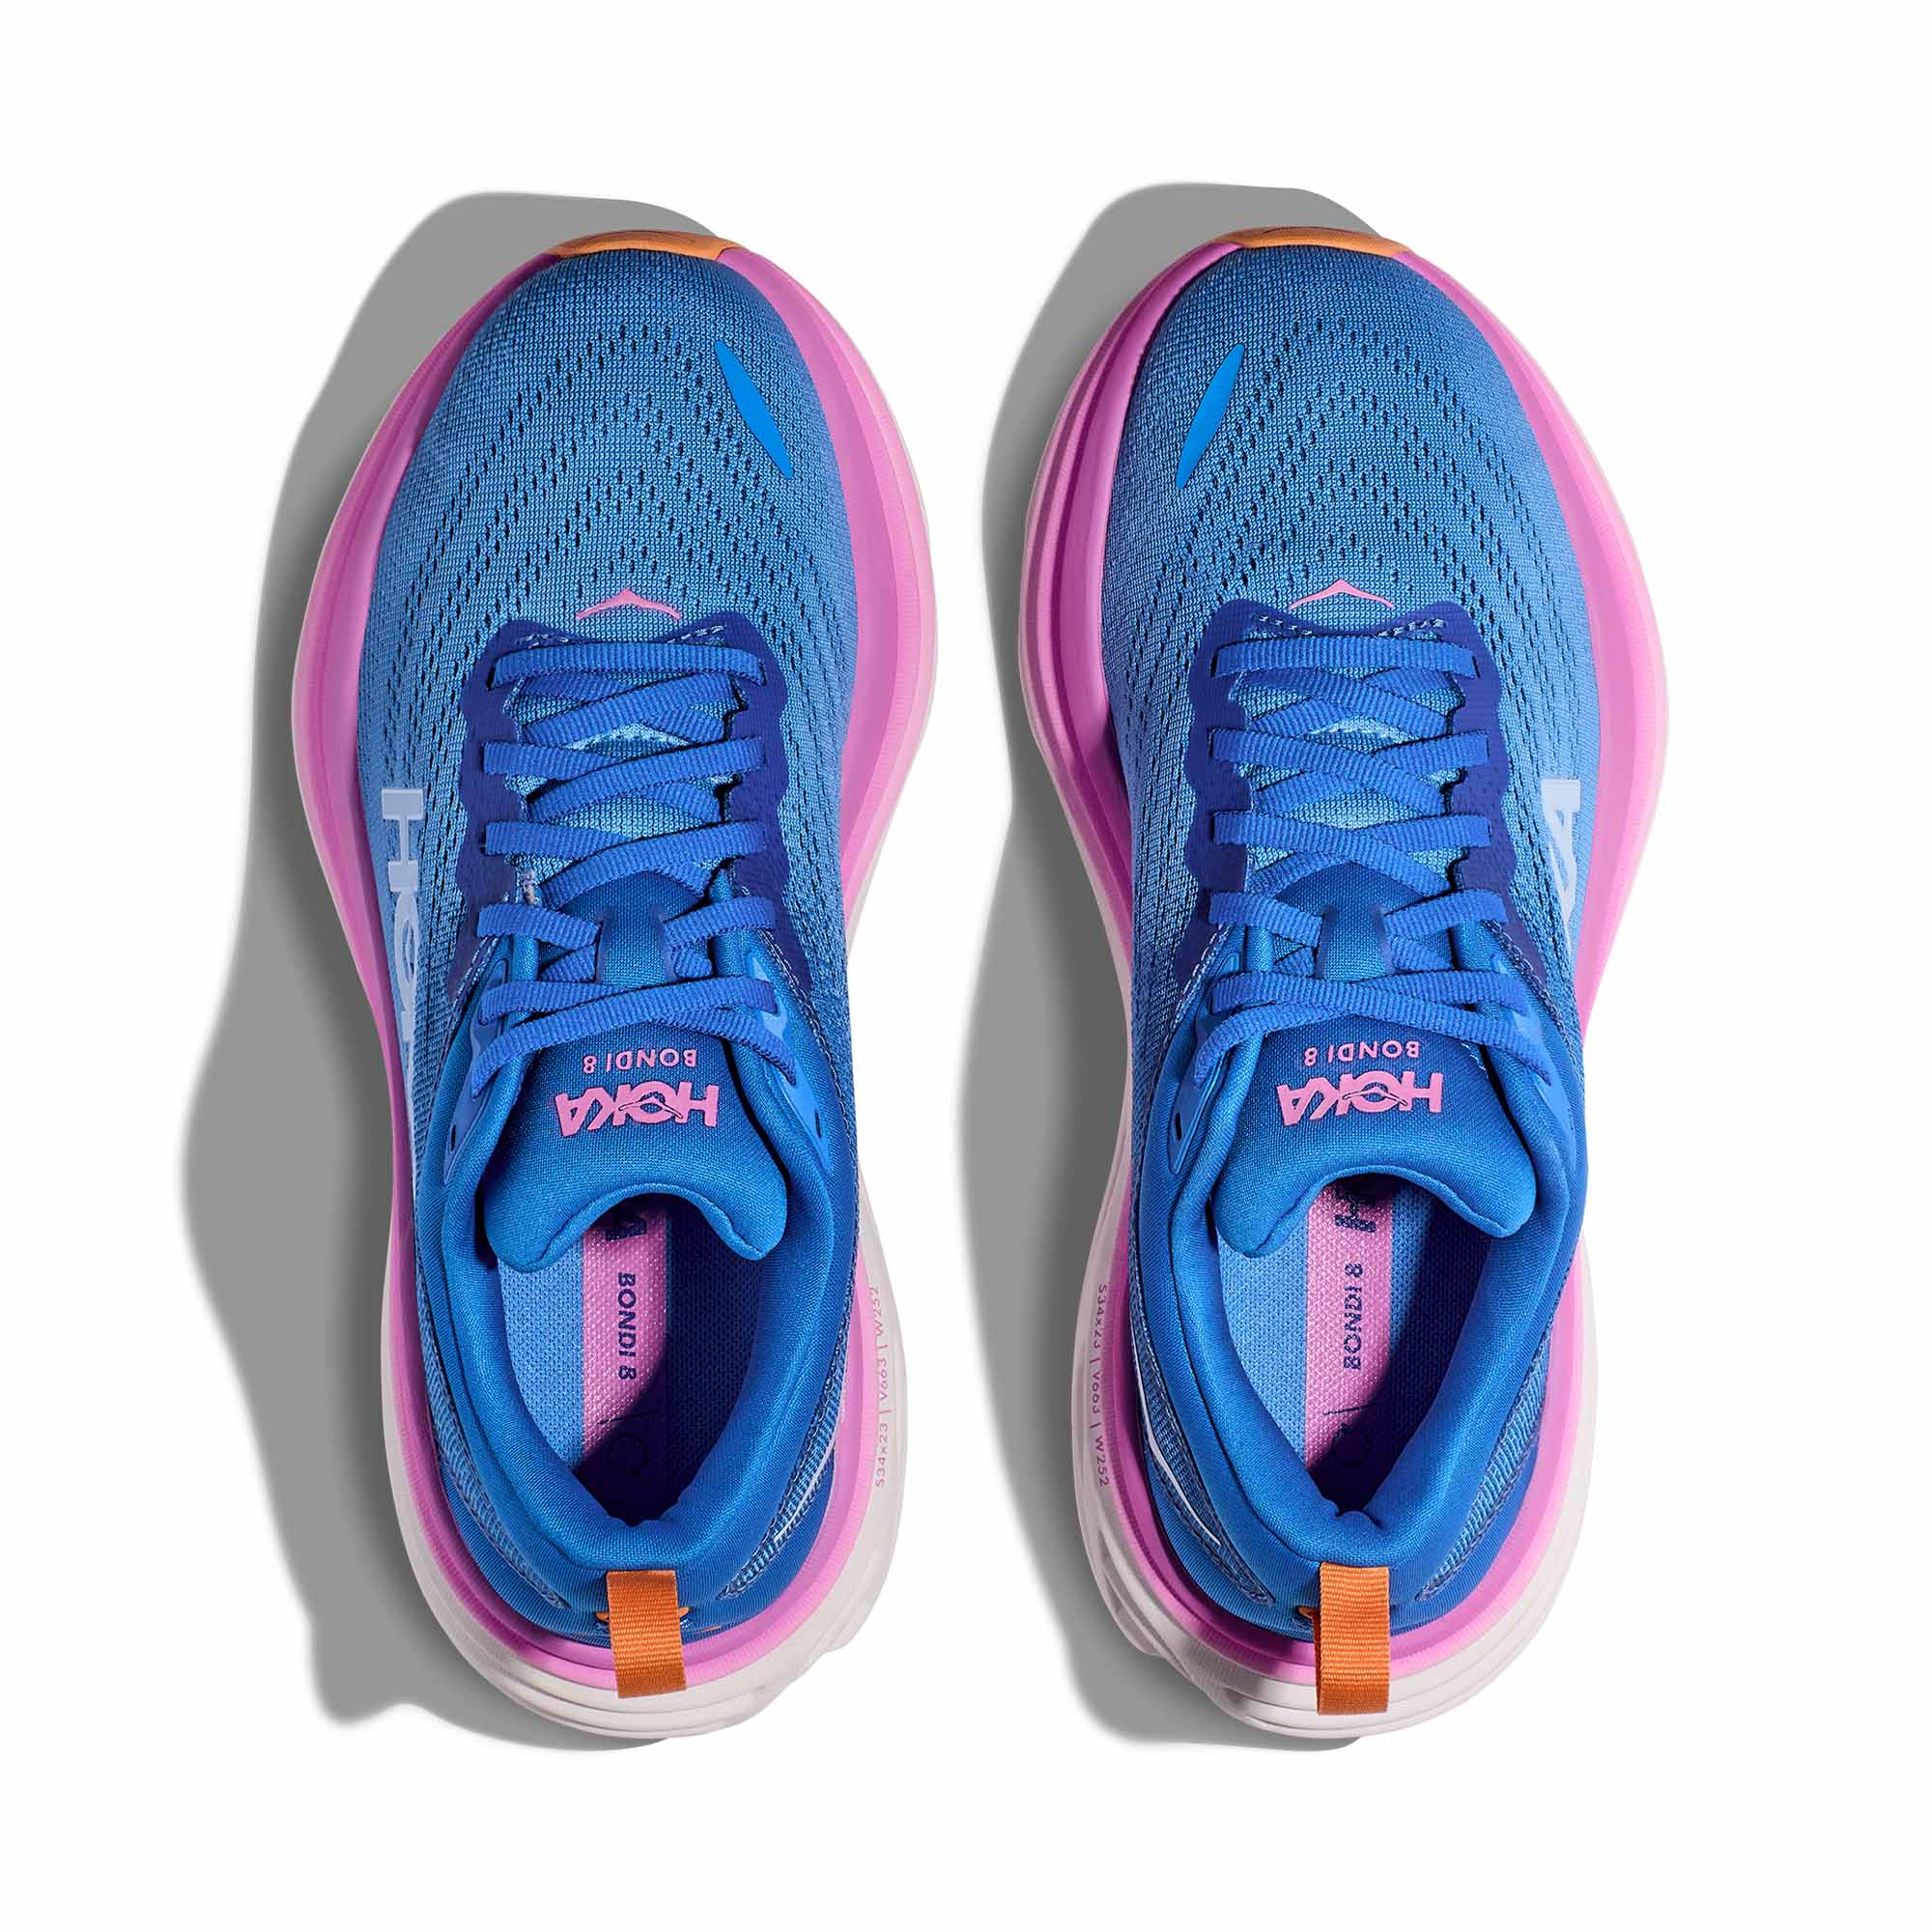 New Hoka One One women Running Bondi 8 Athletics Sneakers RAINBOW